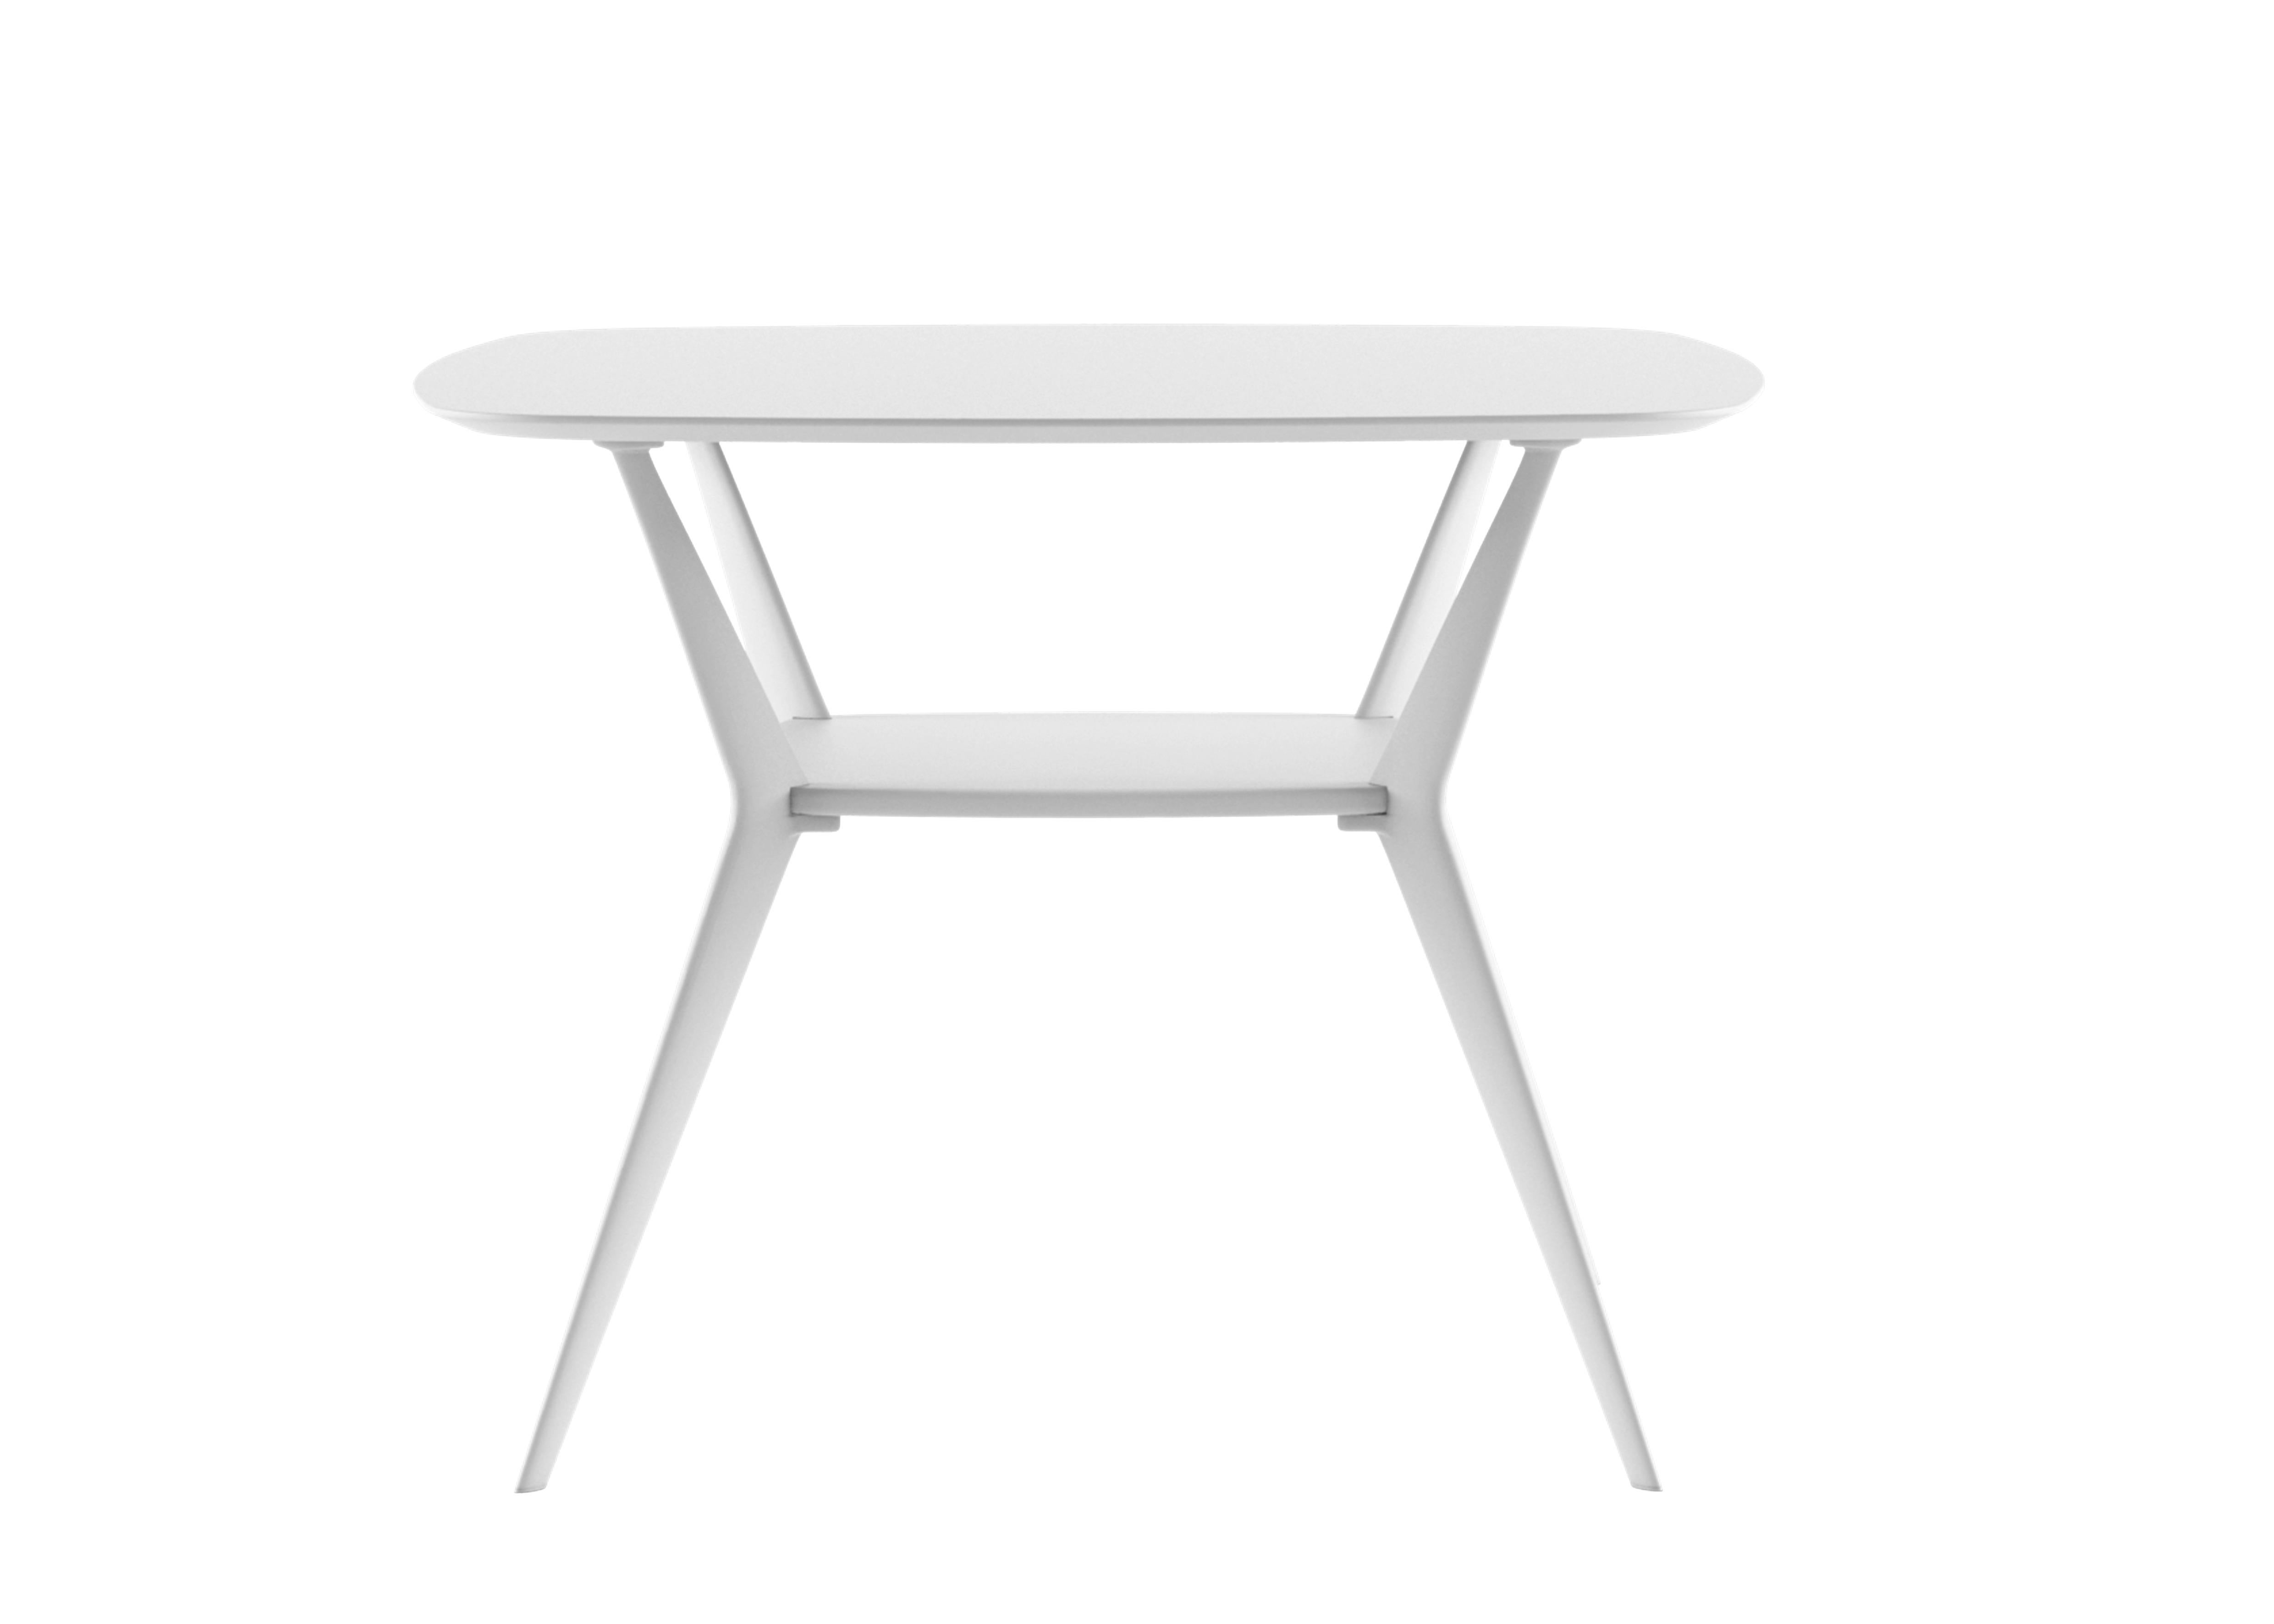 Alias B02 Doppeldecker XS 60x60 Outdoor-Tisch mit weißer Platte und lackiertem Gestell von Alberto Meda

Kleiner Tisch für den Außenbereich mit einer Struktur aus 4 Beinen aus druckgegossenem Aluminium mit lackierten Oberflächen, verbunden durch ein